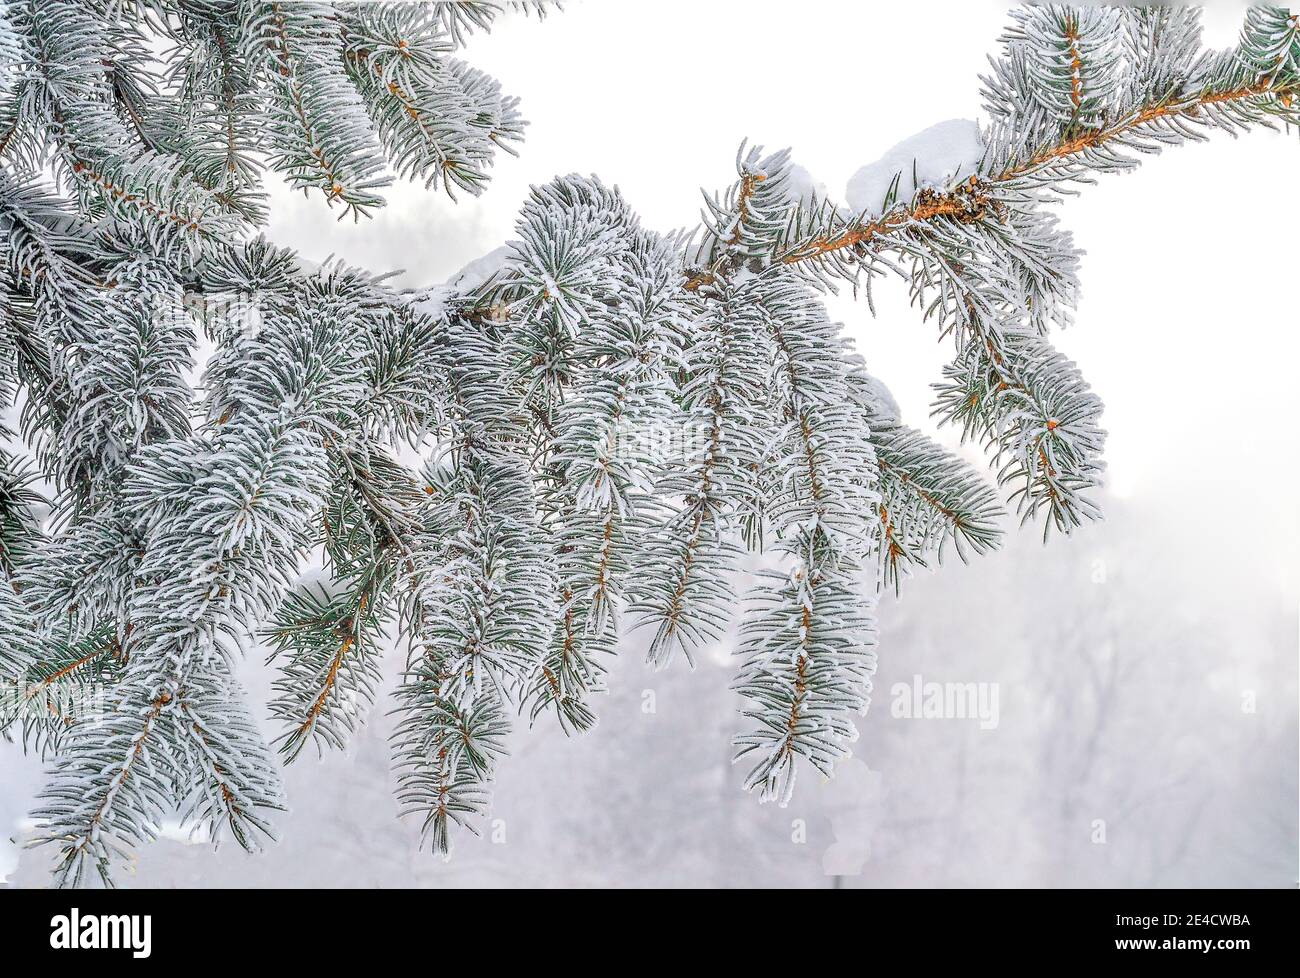 Branche de sapin avec du givre ou de la rime et de la neige sur des aiguilles vertes, isolée sur fond blanc. Arrière-plan saisonnier d'hiver - branche d'épinette à fond dur Banque D'Images